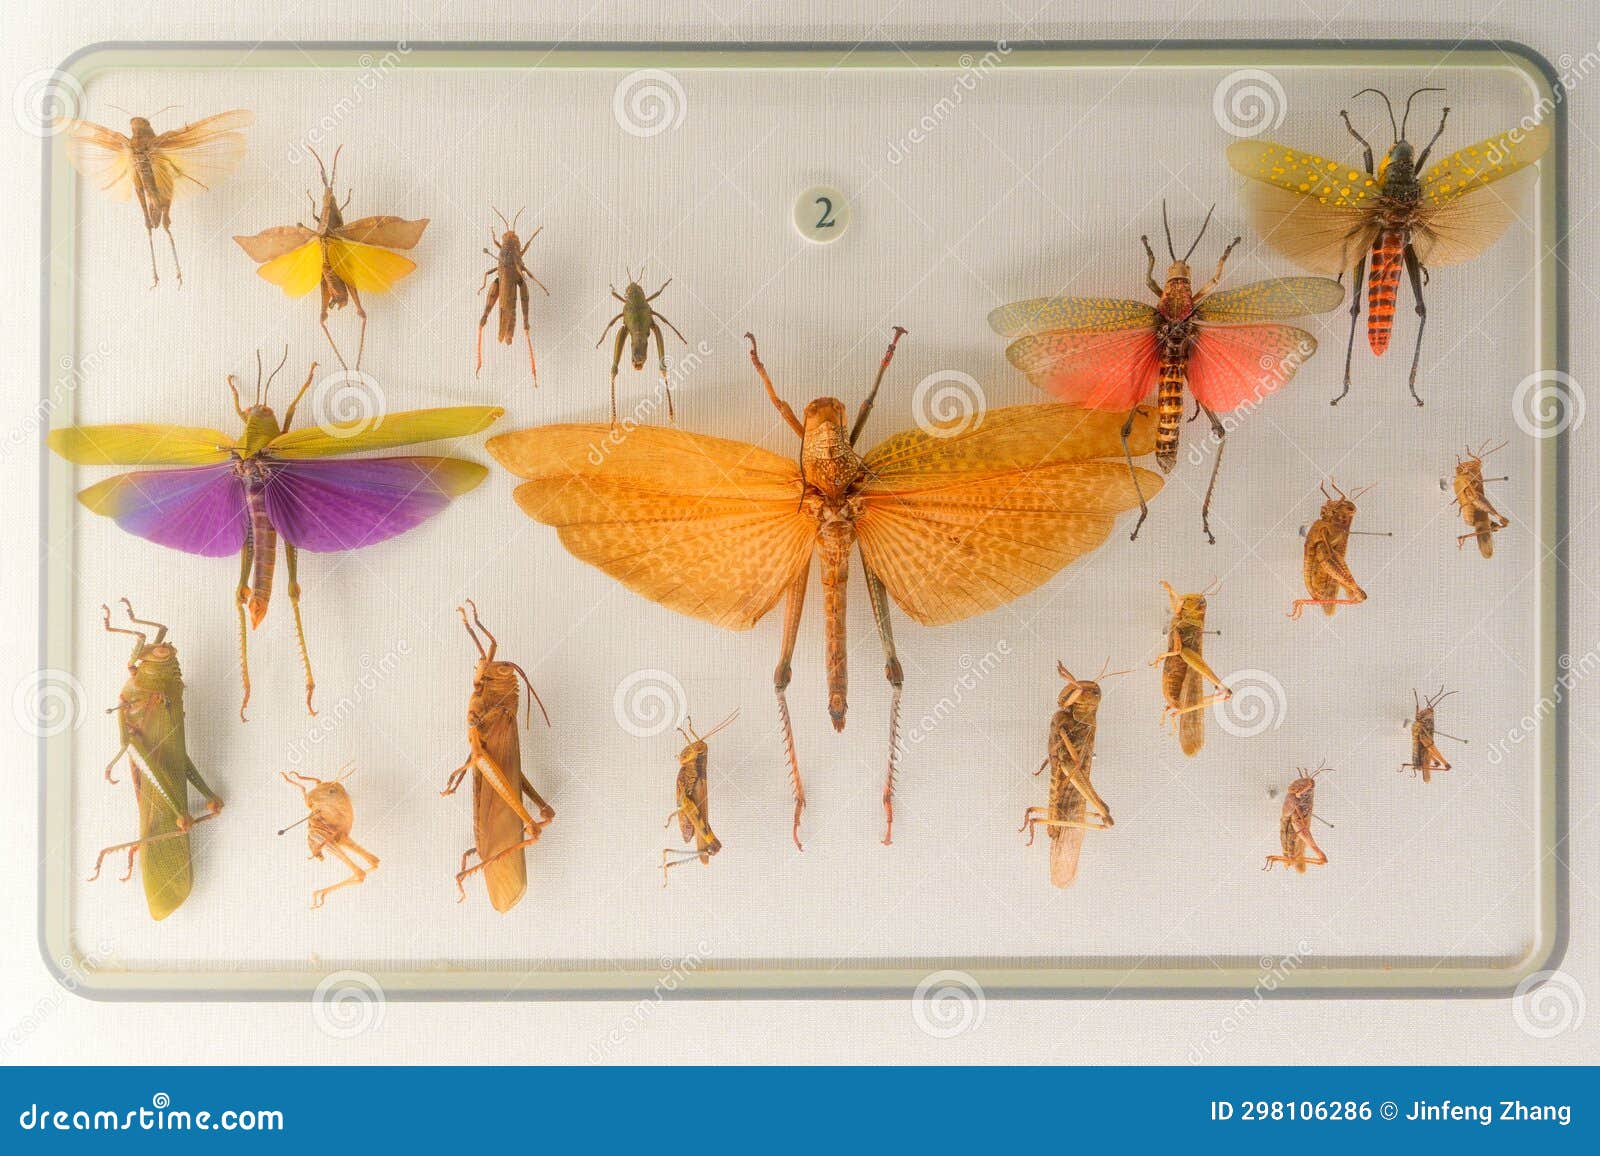 locust specimens